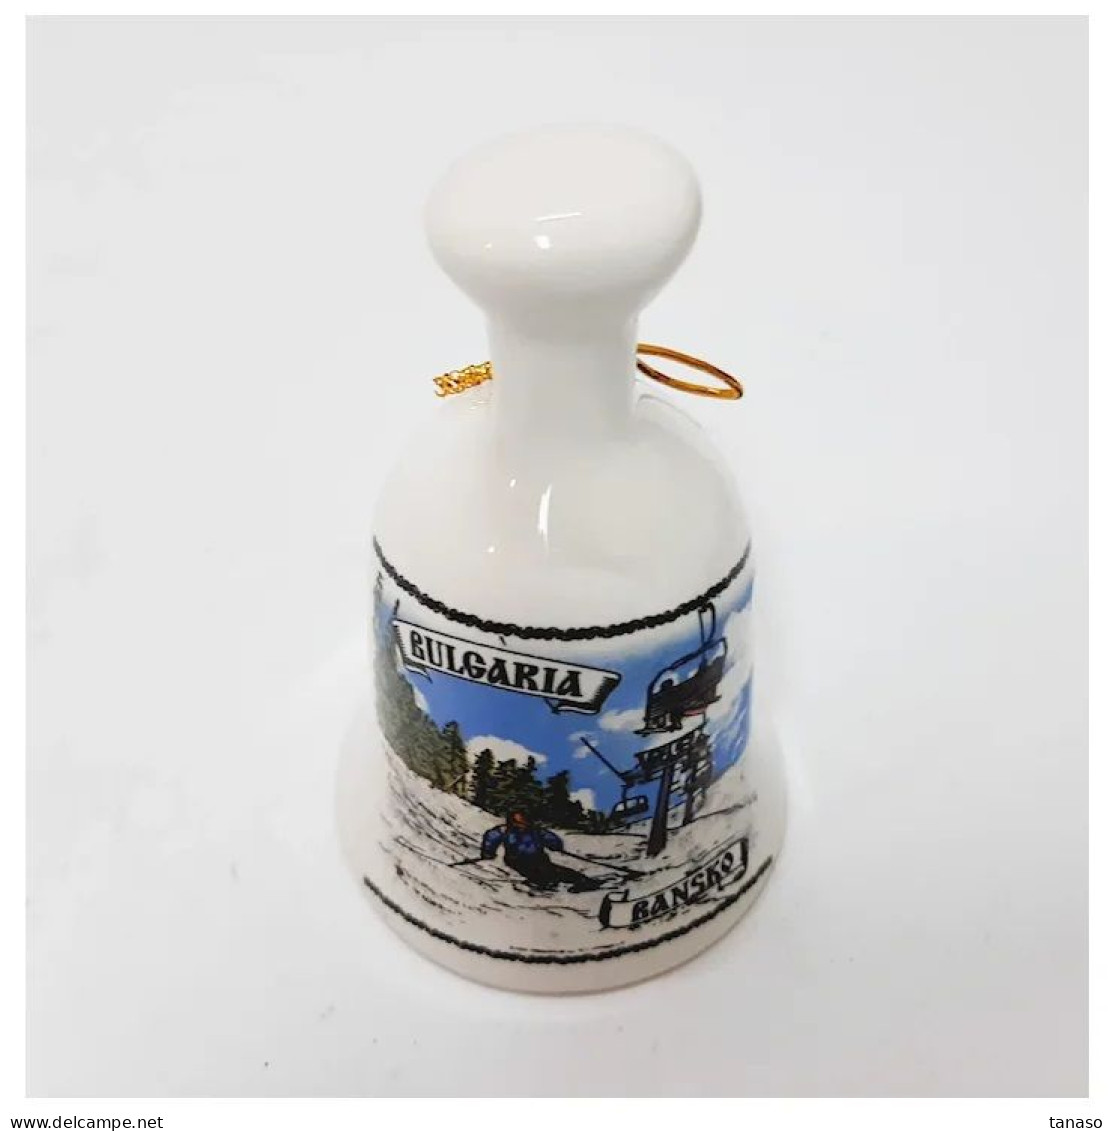 Vintage Decorative Porcelain Bell 4.2.28